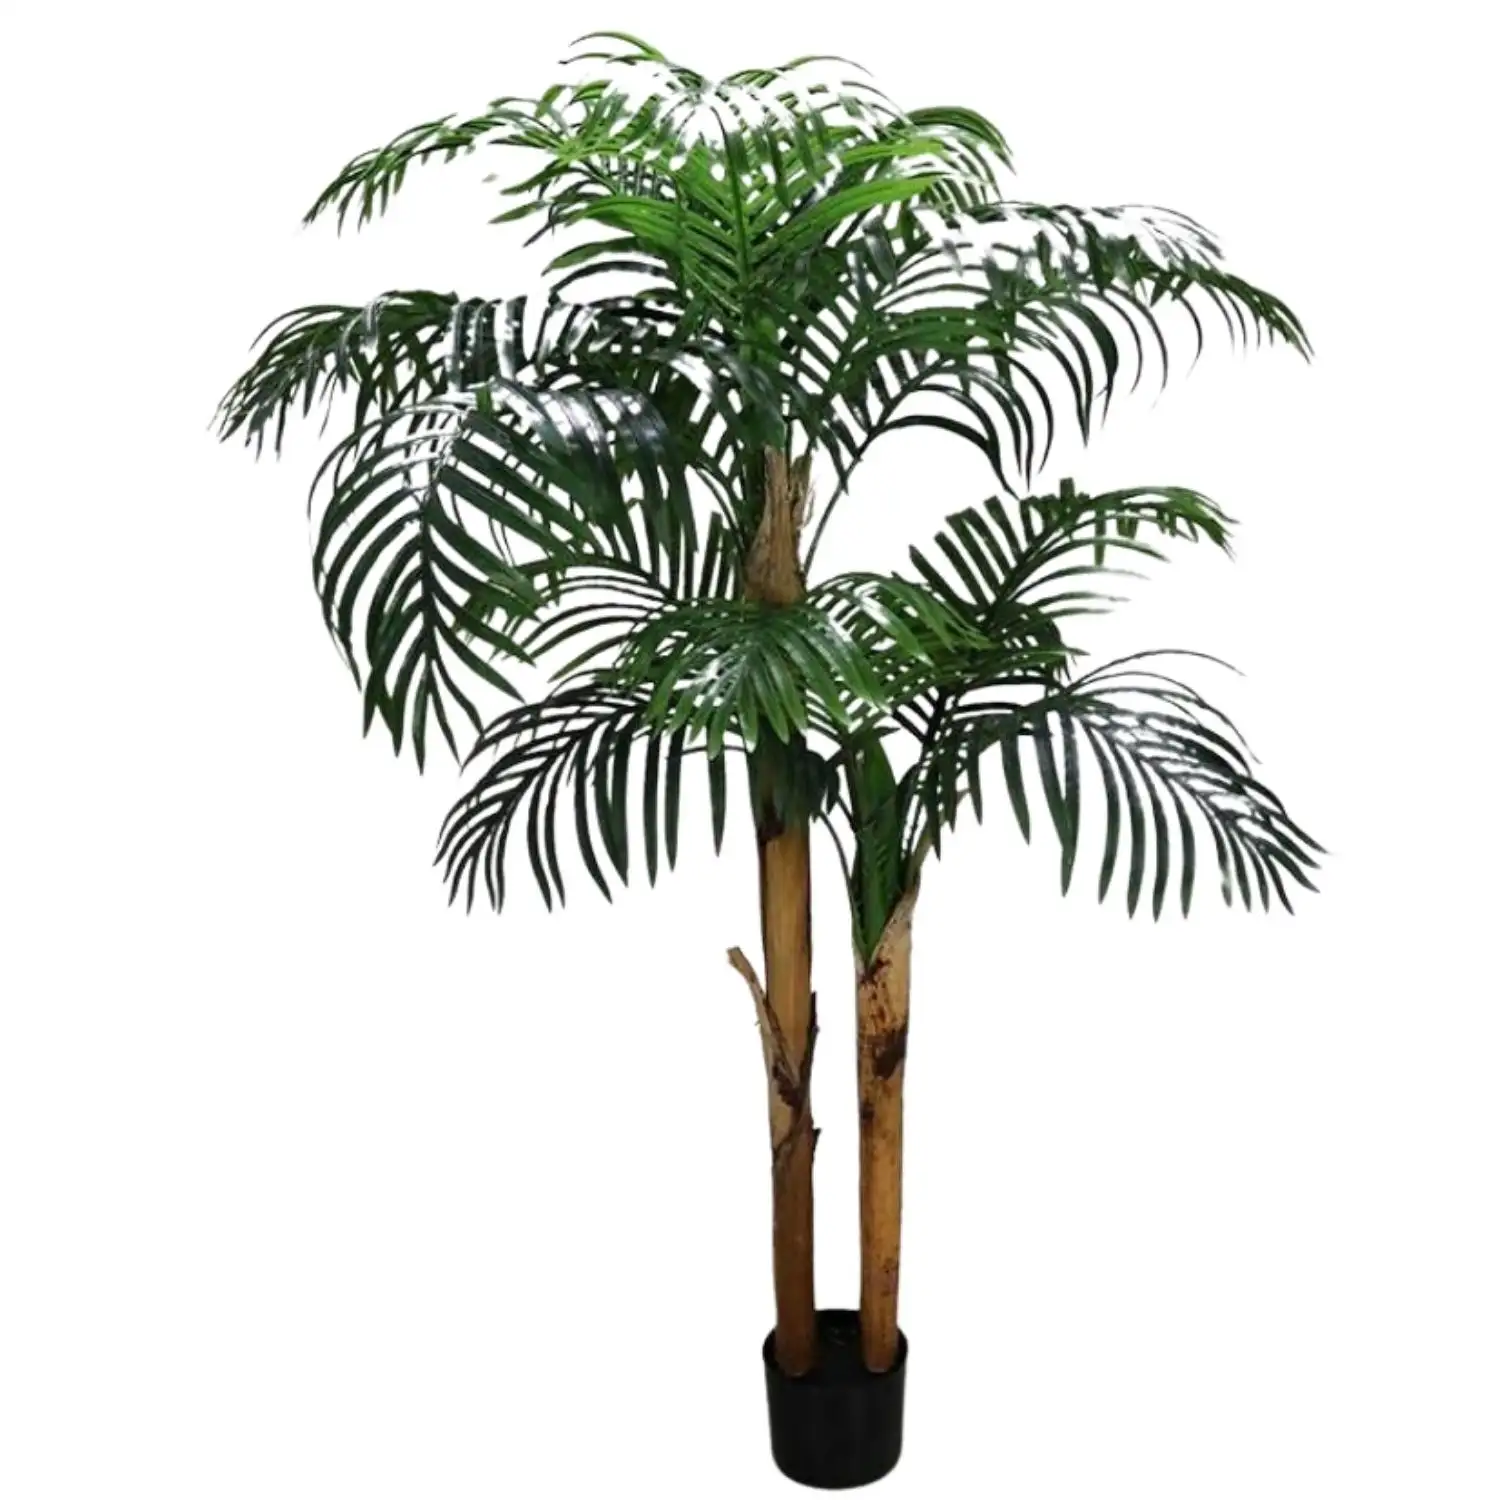 Arbre artificiel vert réaliste de vente chaude Faux palmier tropical en pot personnalisé avec de vrais palmiers artificiels d'écorce